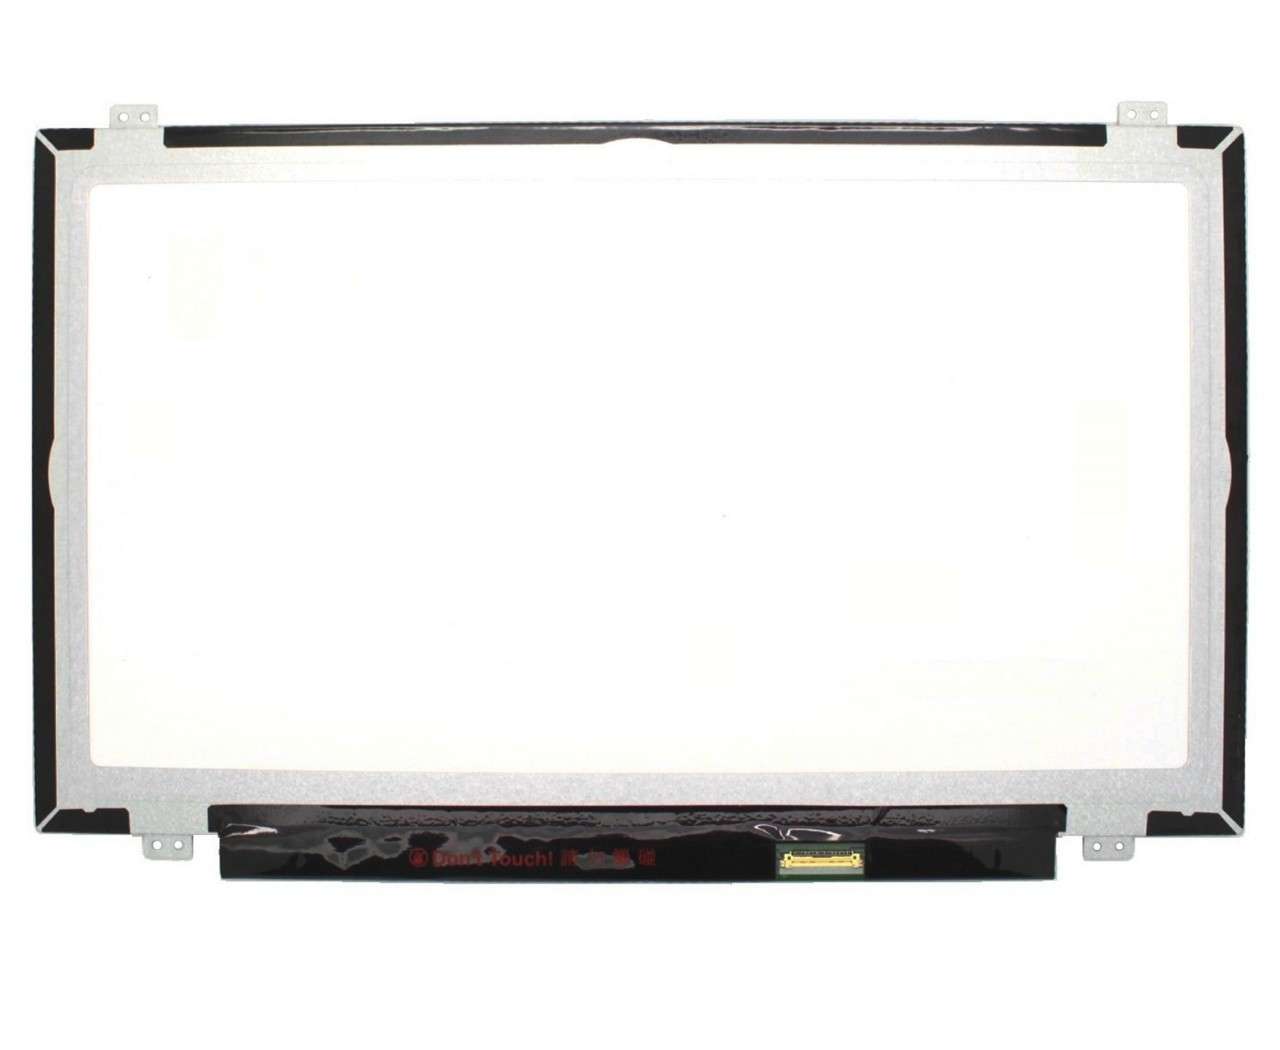 Display laptop LG LP140WF3-SPC1 Ecran 14.0 1920×1080 30 pini eDP imagine 2021 LG